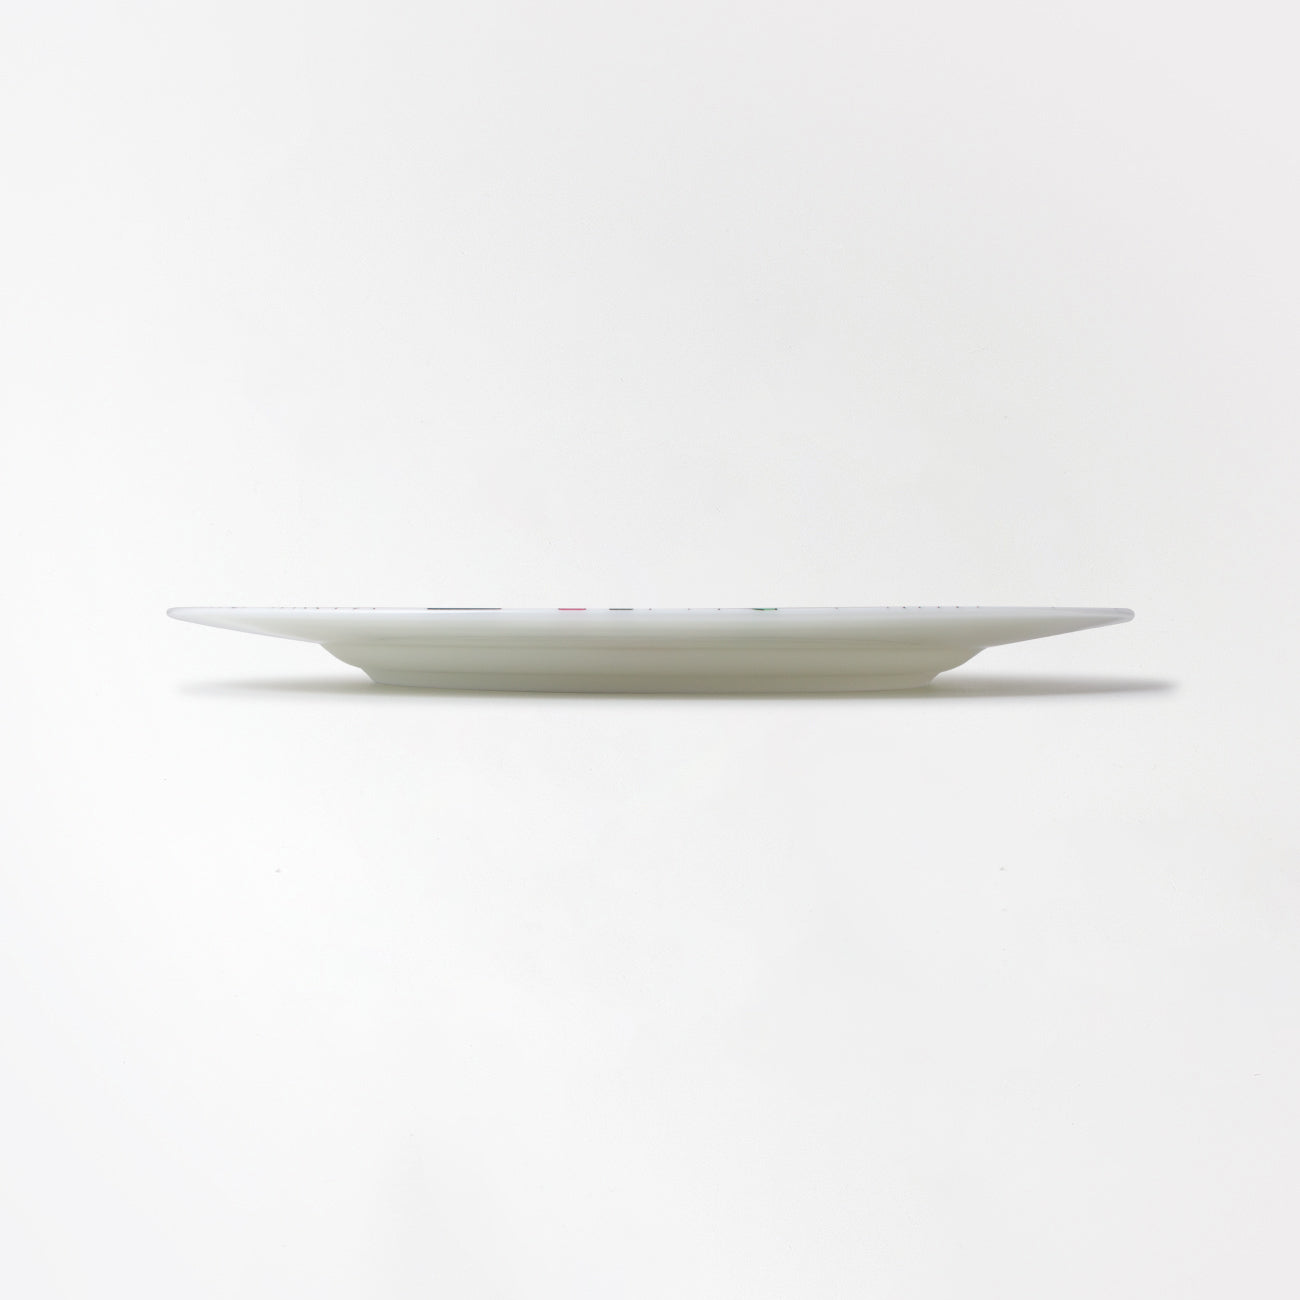 【復興支援商品】ART PLATE 25cm Satoru Kobayashi 「数字」